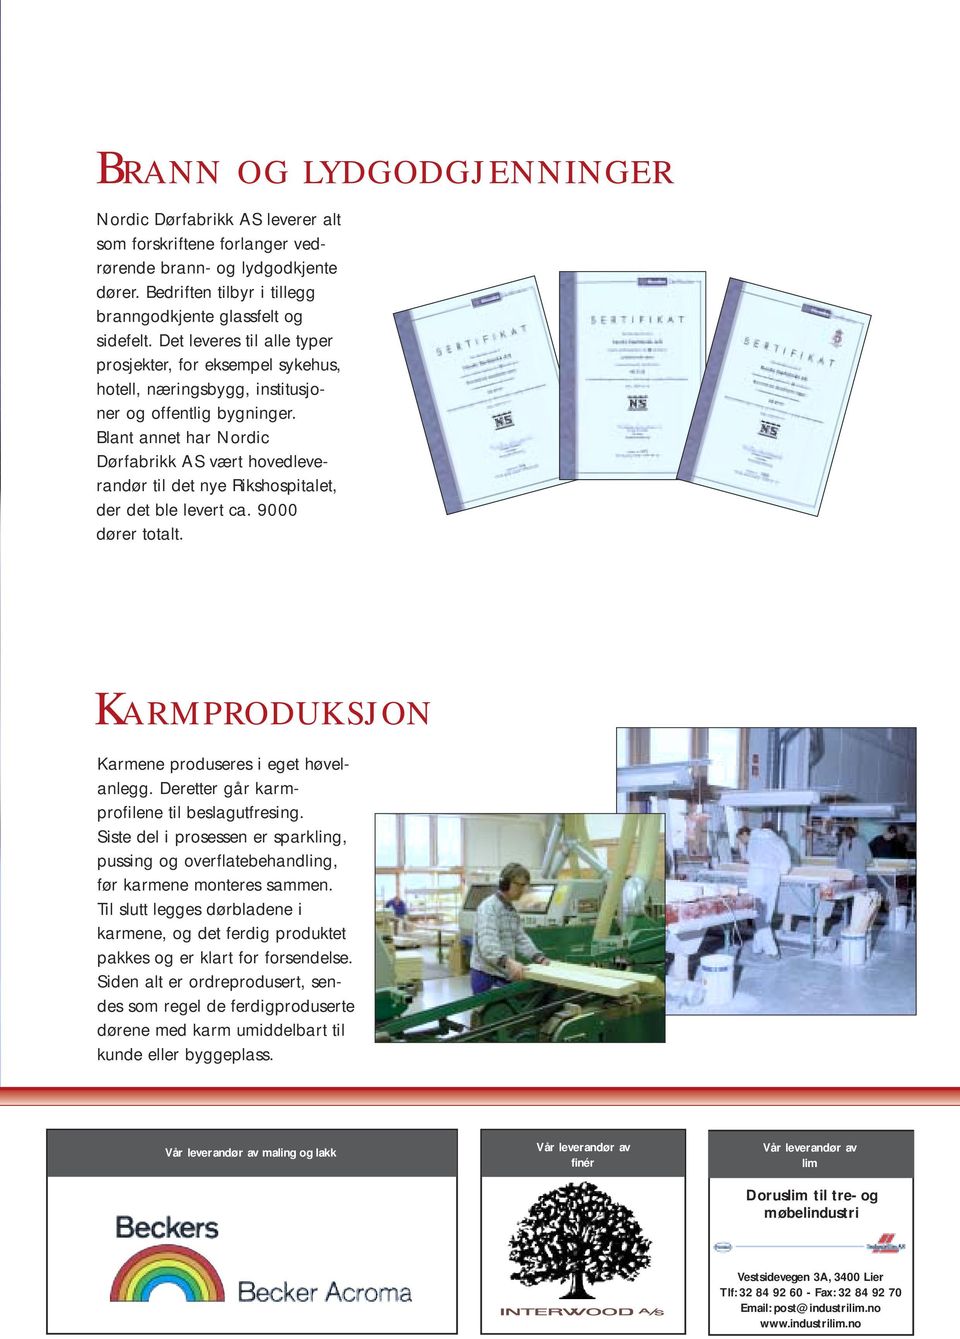 Blant annet har Nordic Dørfabrikk AS vært hovedleverandør til det nye Rikshospitalet, der det ble levert ca. 9000 dører totalt. Karmproduksjon Karmene produseres i eget høvelanlegg.